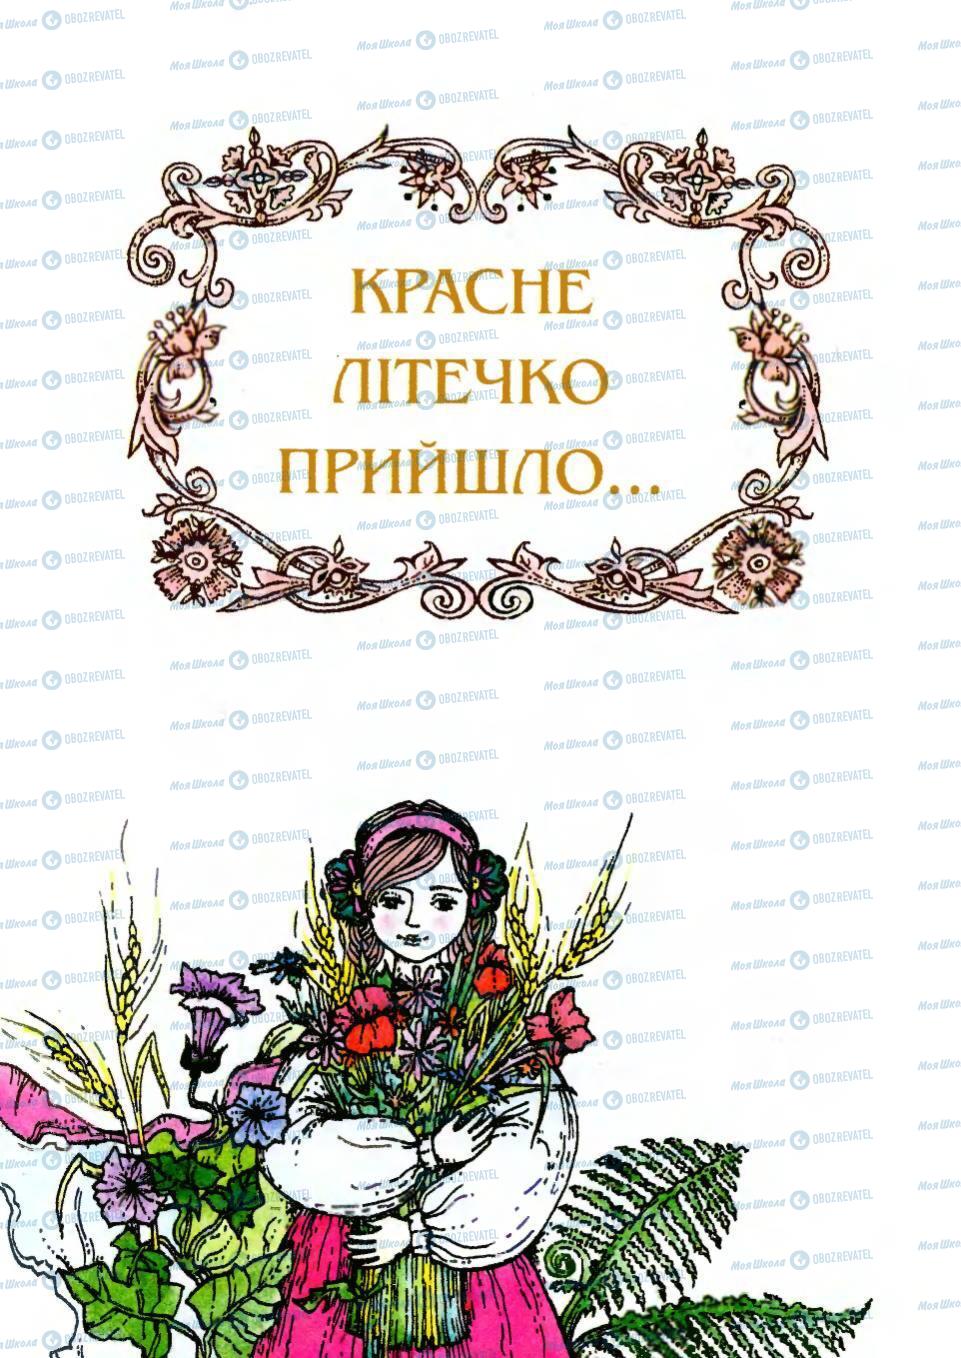 Підручники Українська література 6 клас сторінка 173